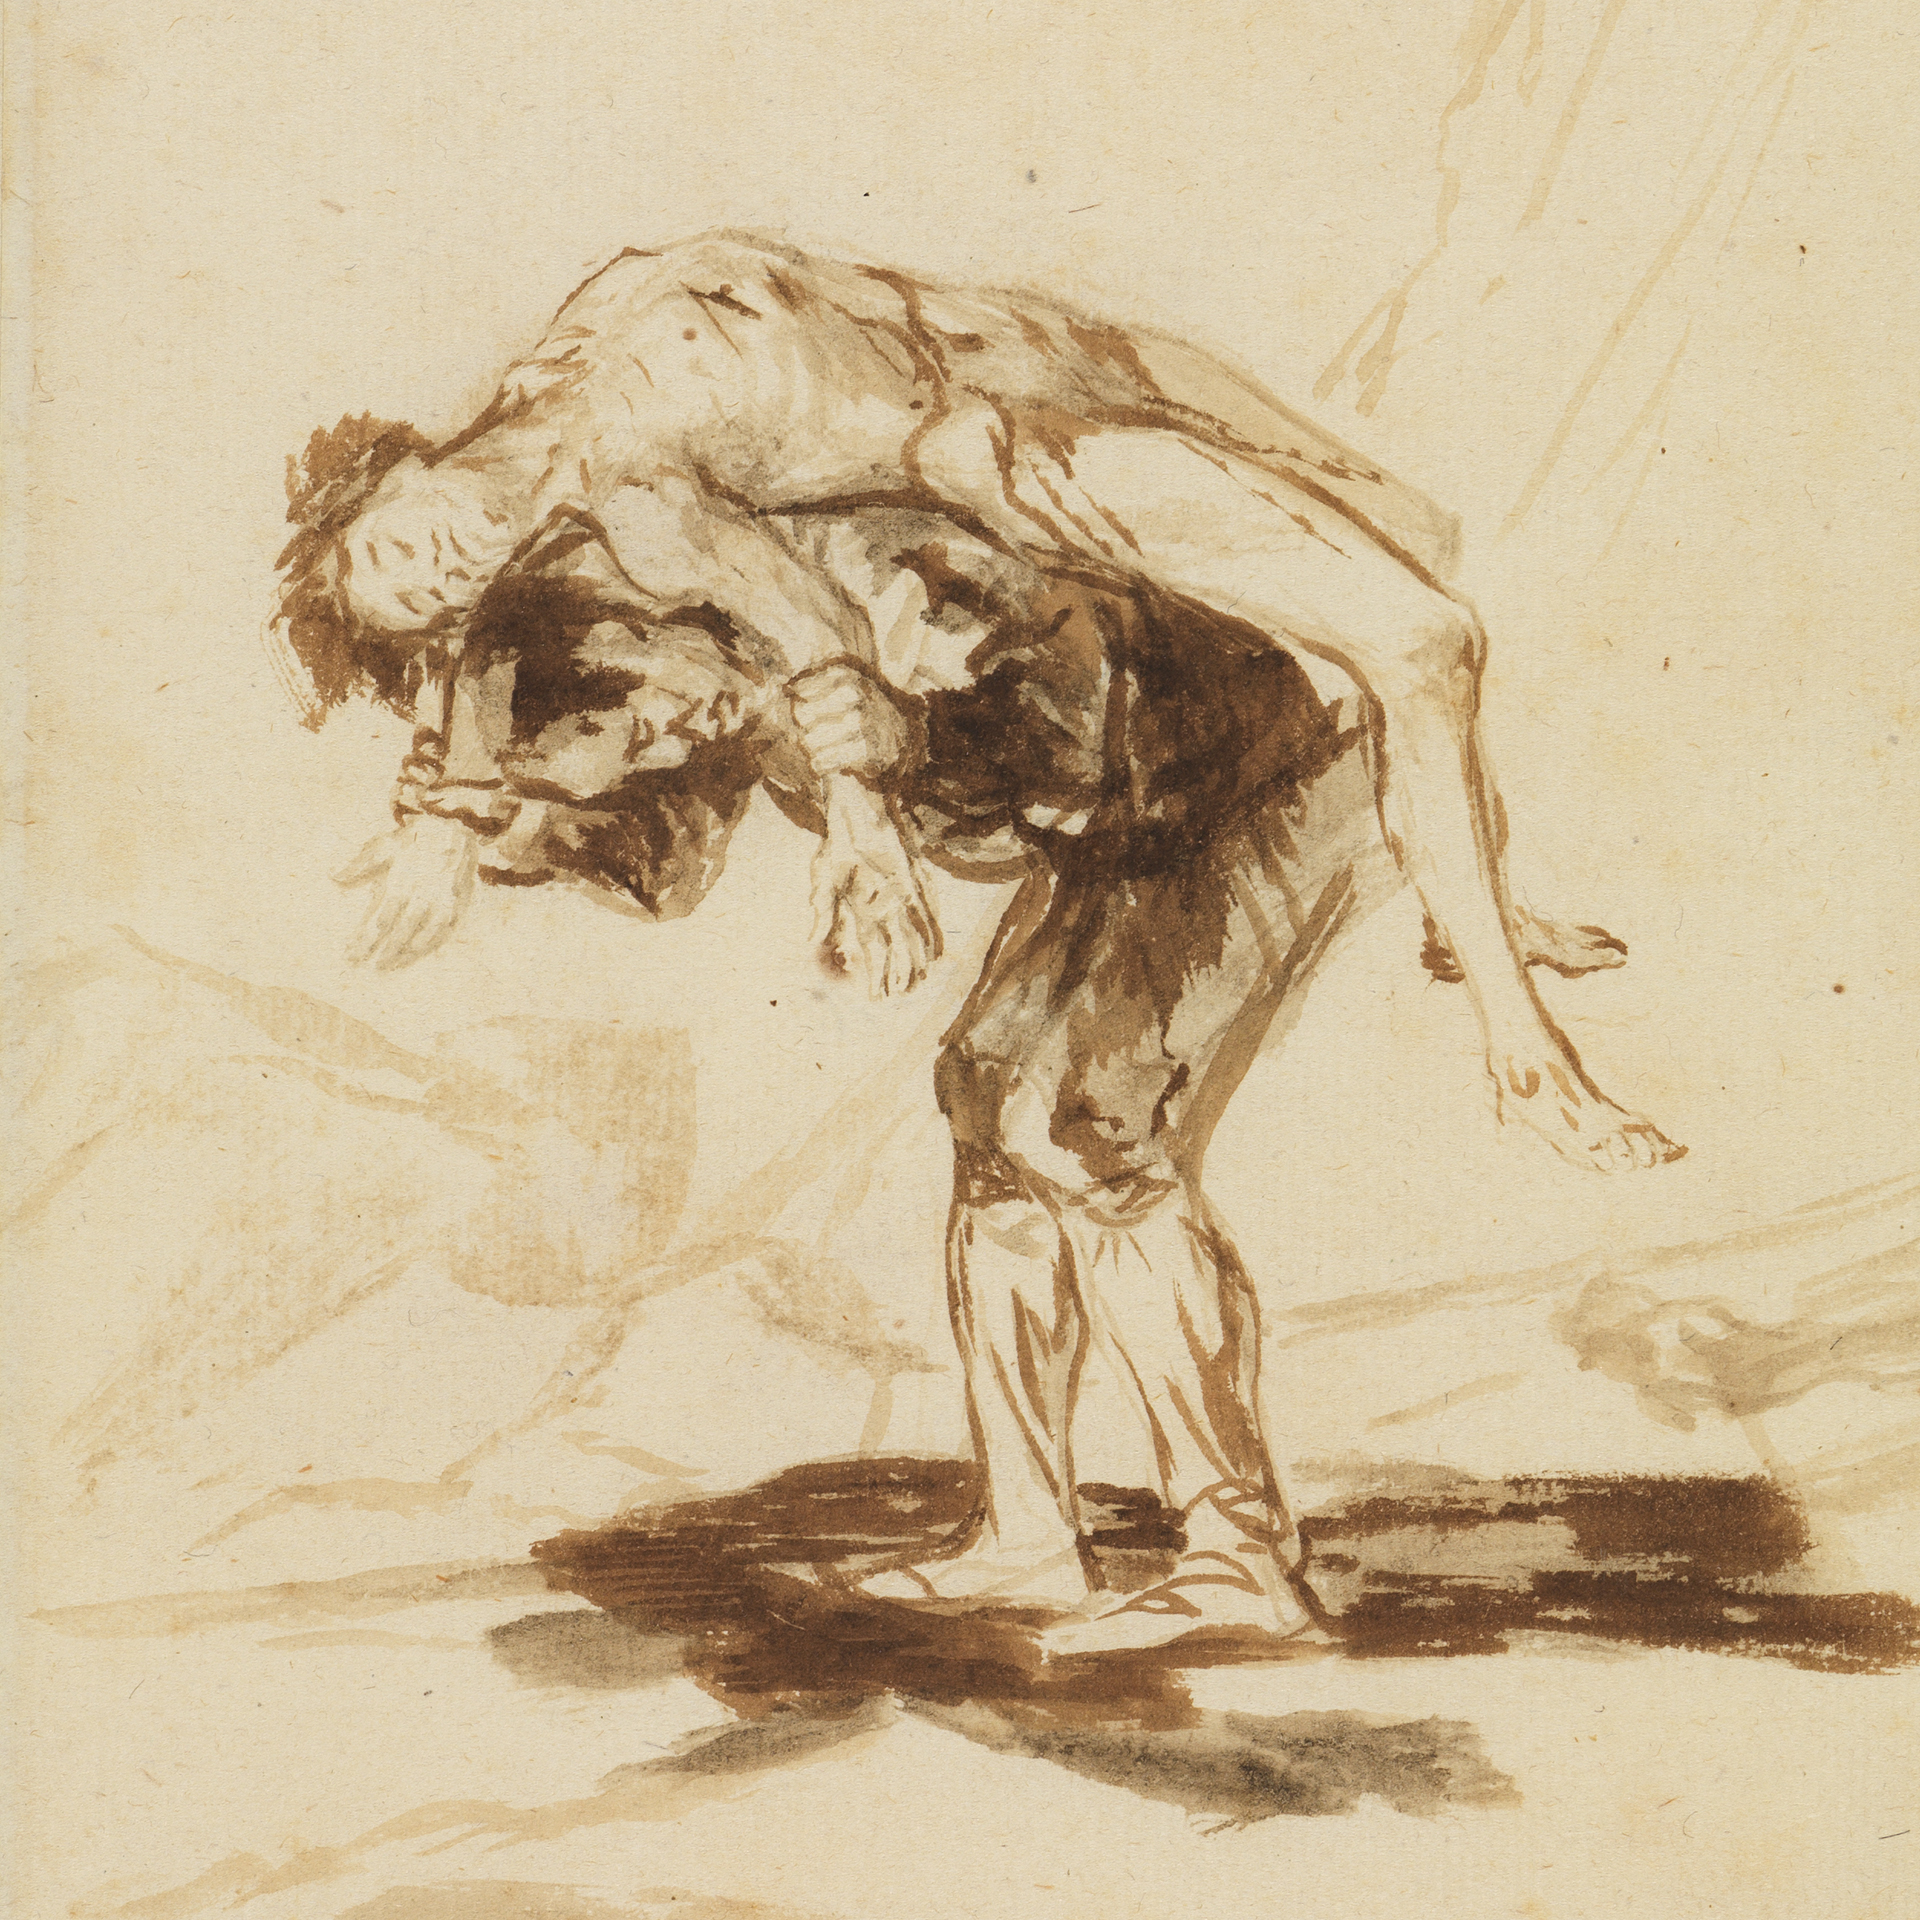 Zeichnung Ein Mann trägt einen Toten von Francisco de Goya, entstanden zwischen 1815 und 1820. Die Zeichnung zeigt einen Mann der einen anderen Mann trägt.